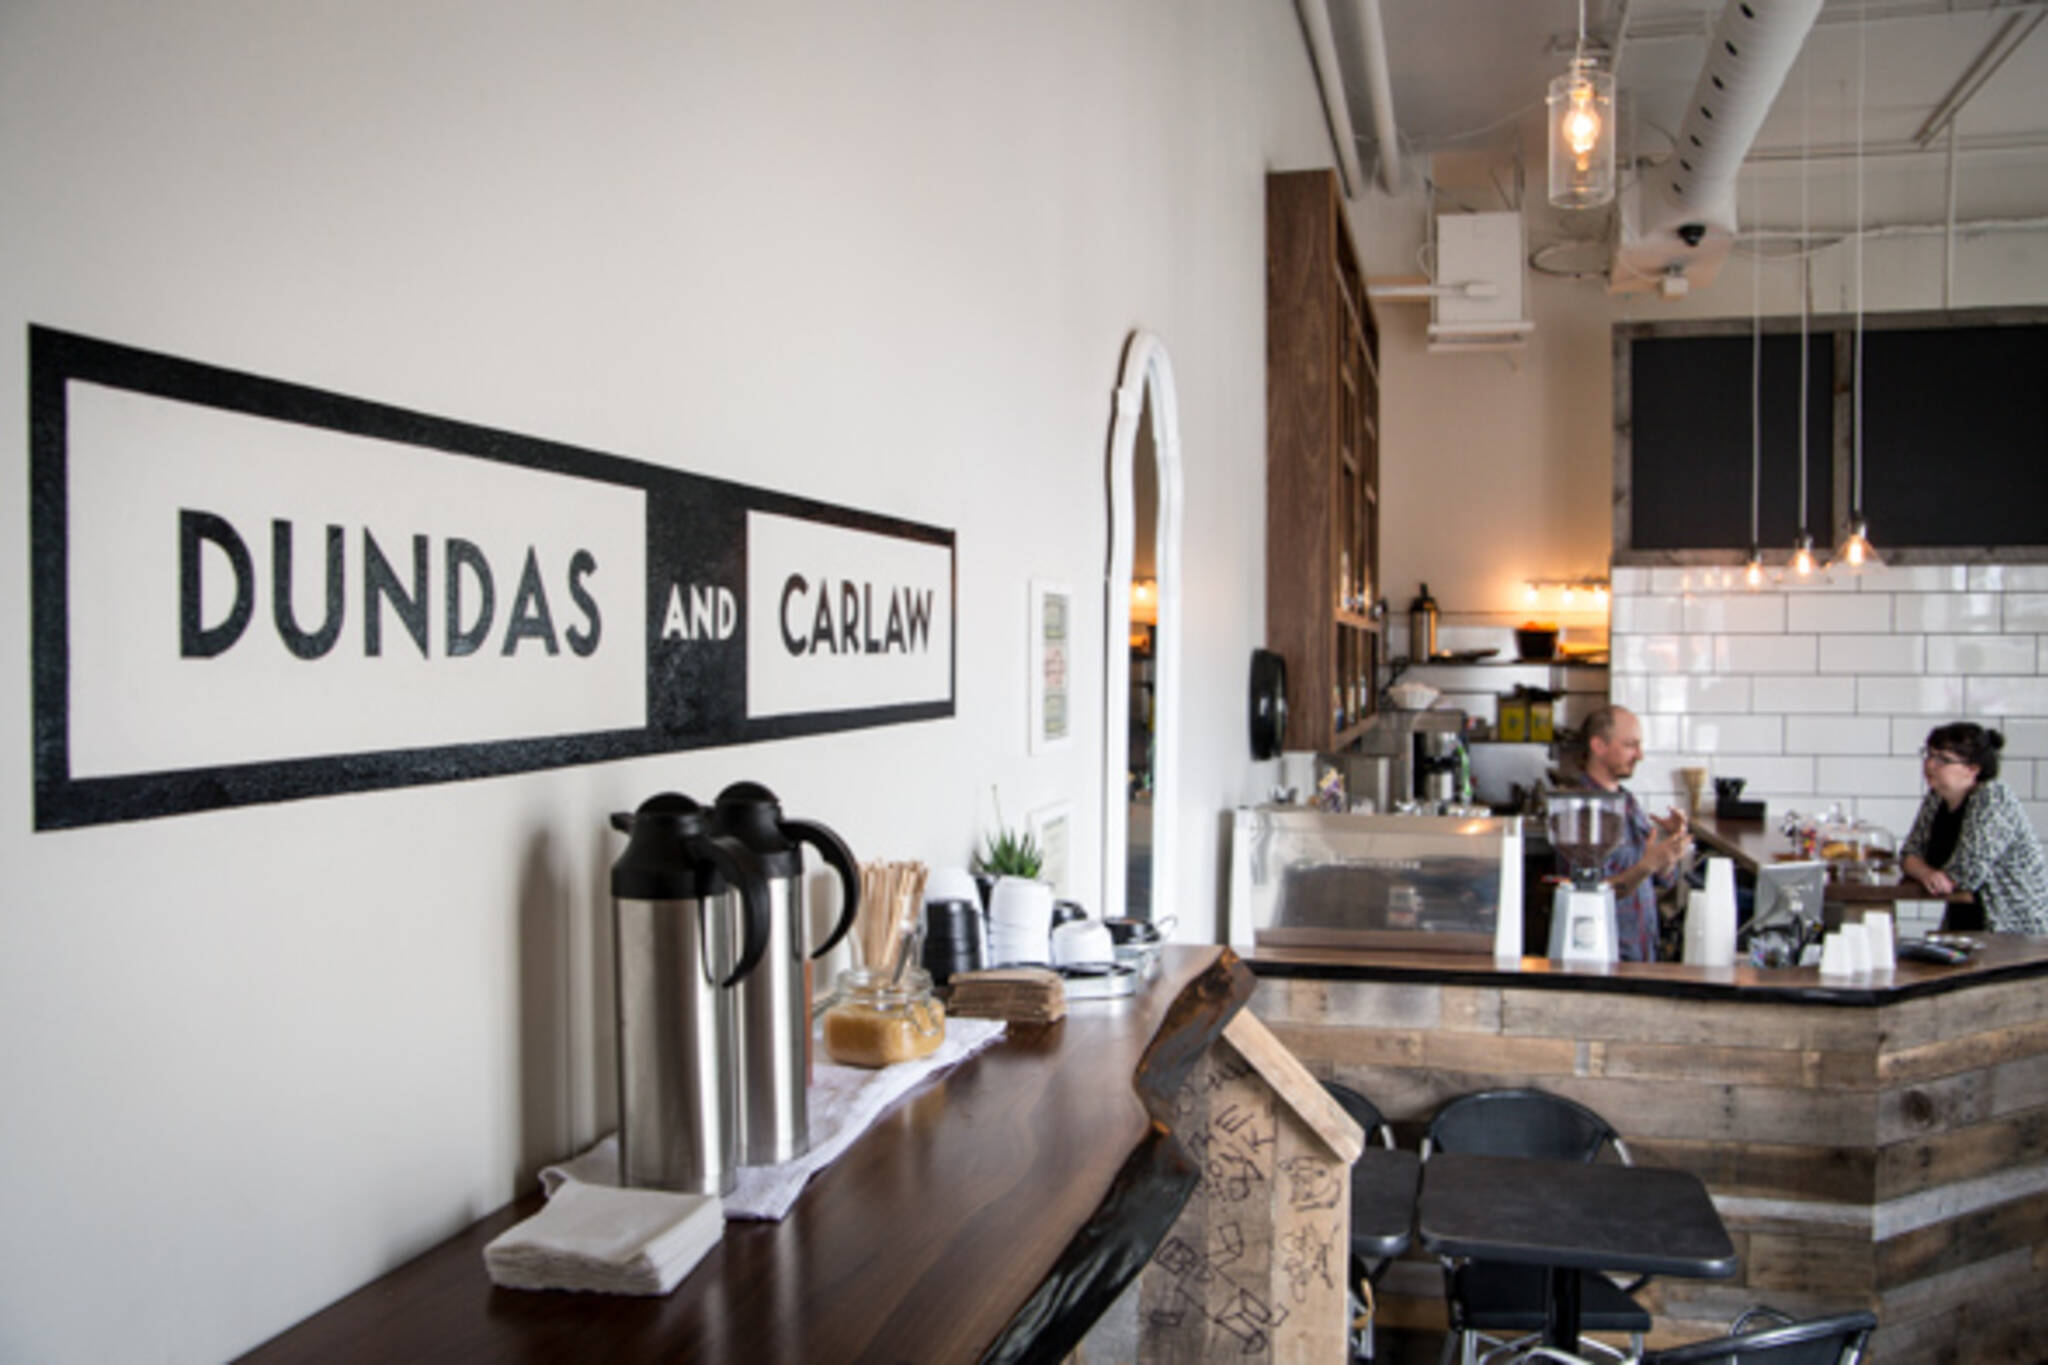 Dundas cafe bar